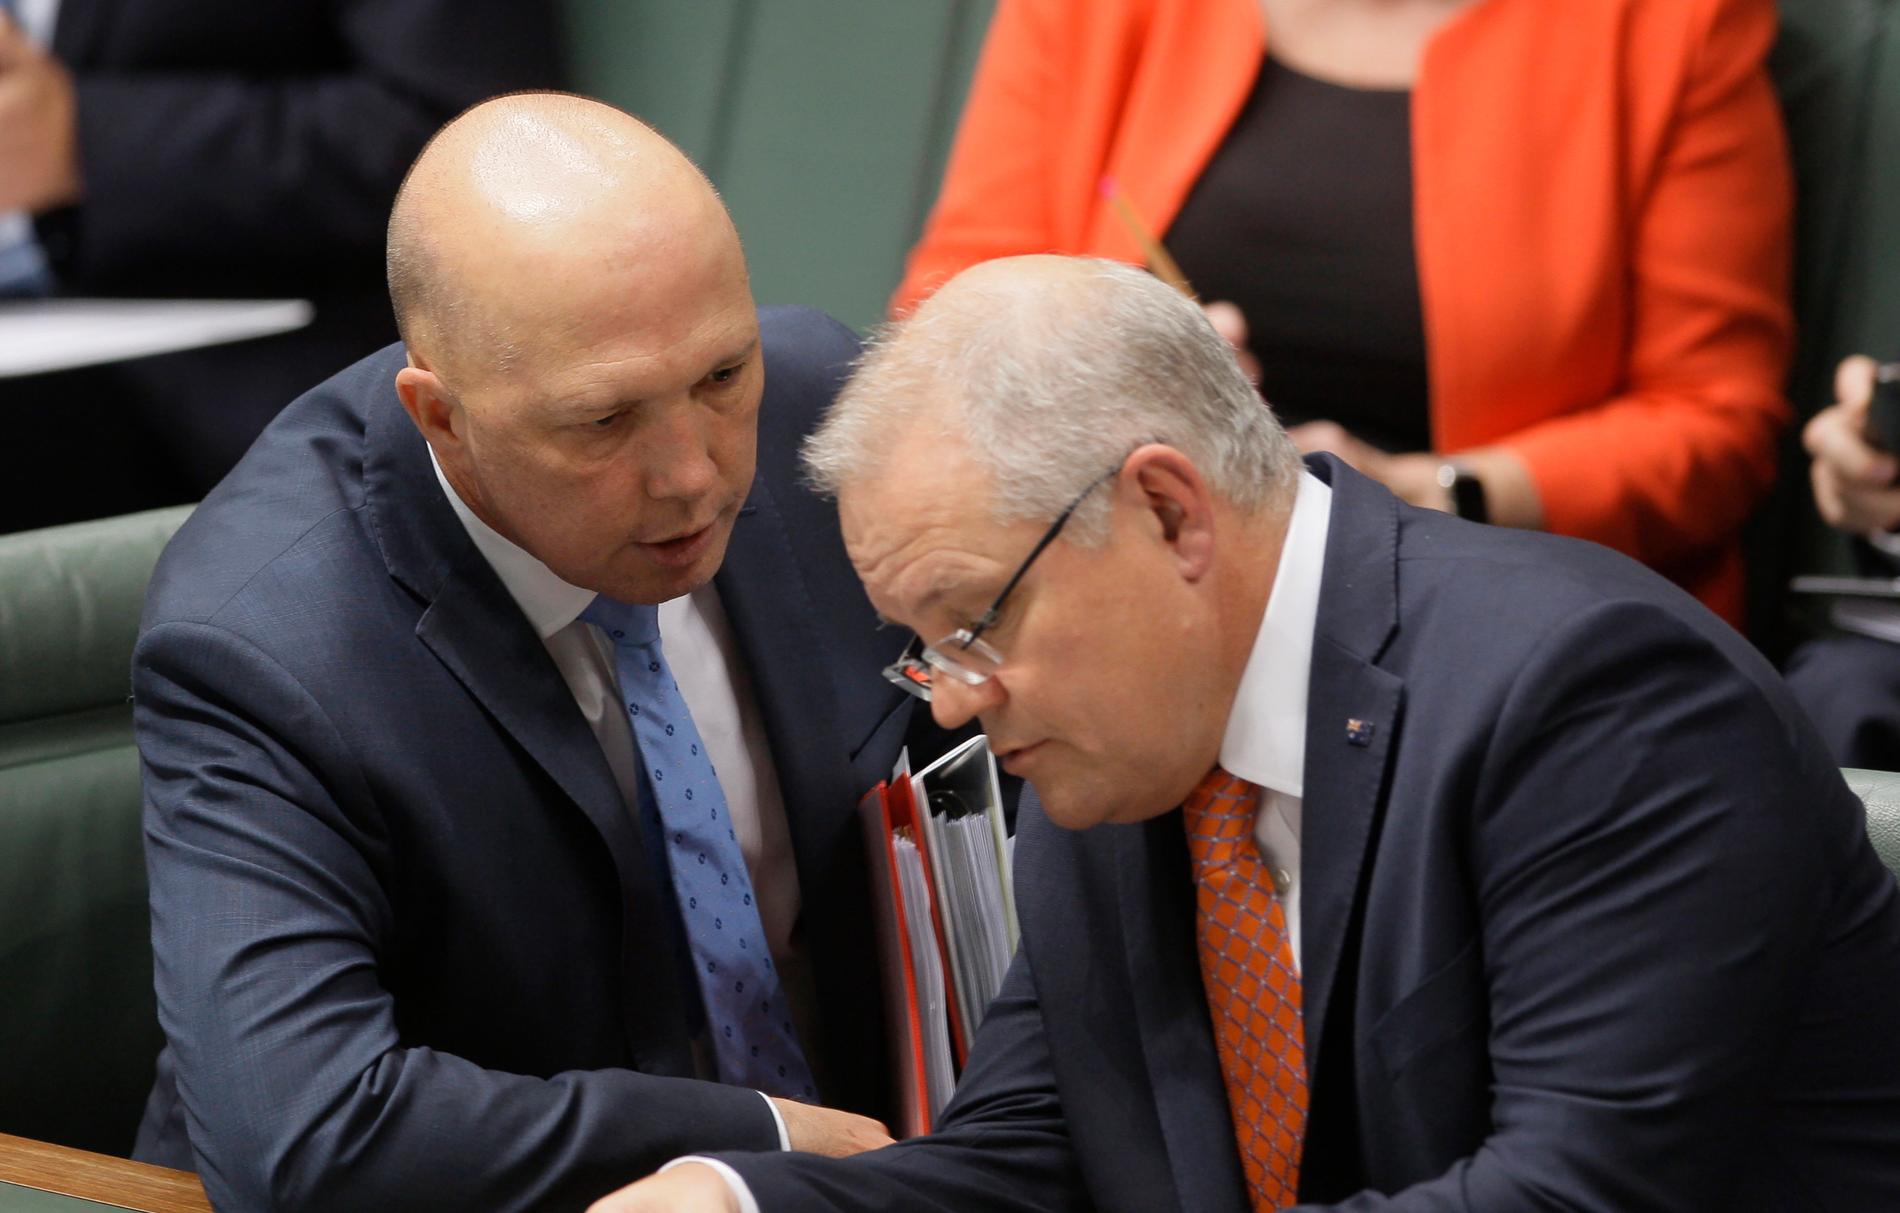 Australiens inrikesminister Peter Dutton (till vänster) har smittats av coronavirus. Här syns han i en bild från sommaren 2019 tillsammans med premiärminister Scott Morrison.